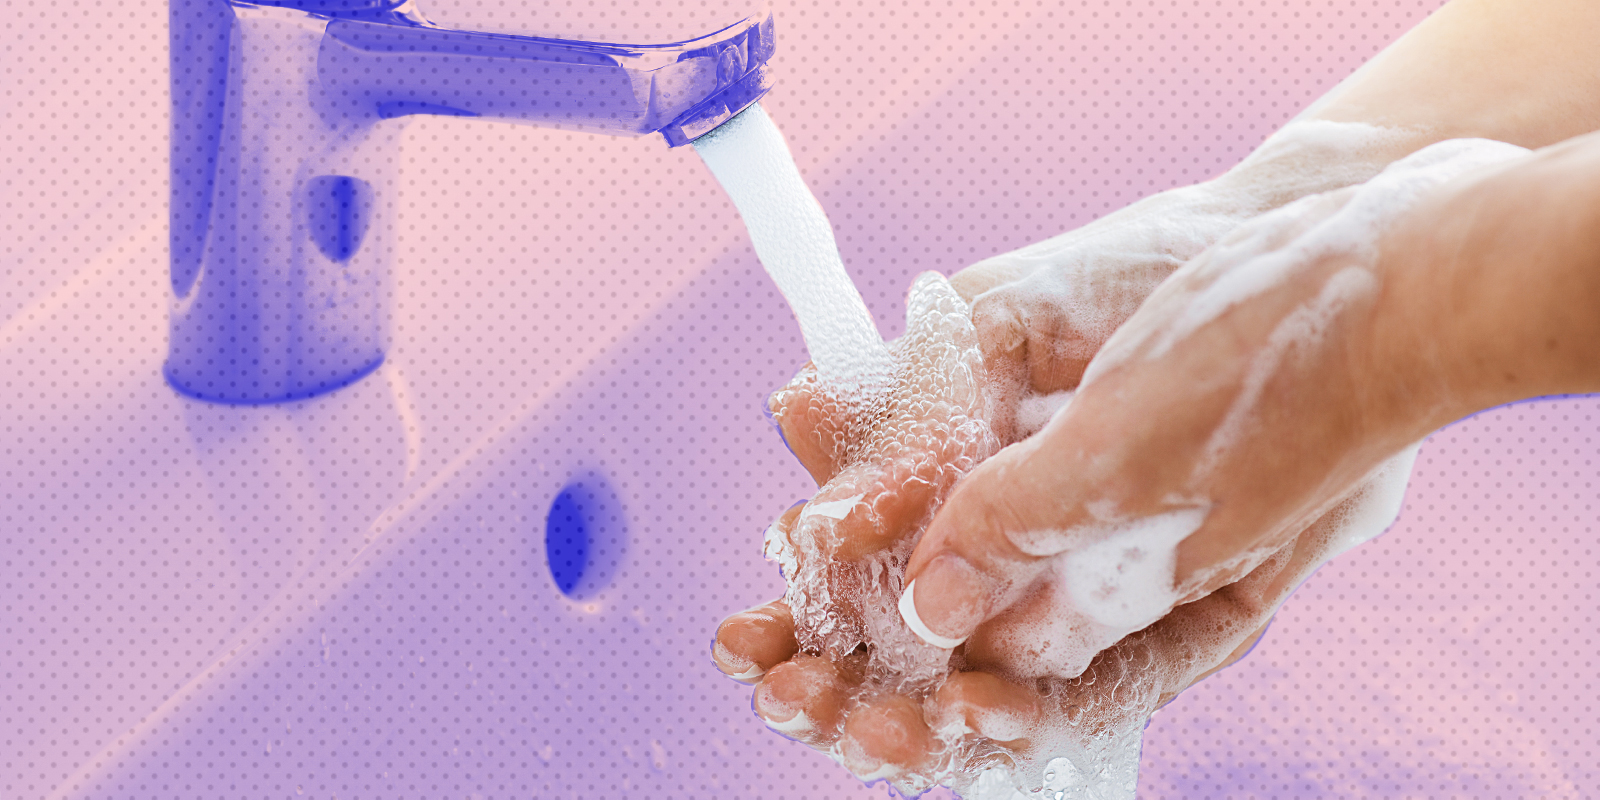 Антисептическое мытье. Мытье рук антисептиком. Мыть руки. Мойте и дезинфицируйте руки. Мытье рук с мылом антисептическим.